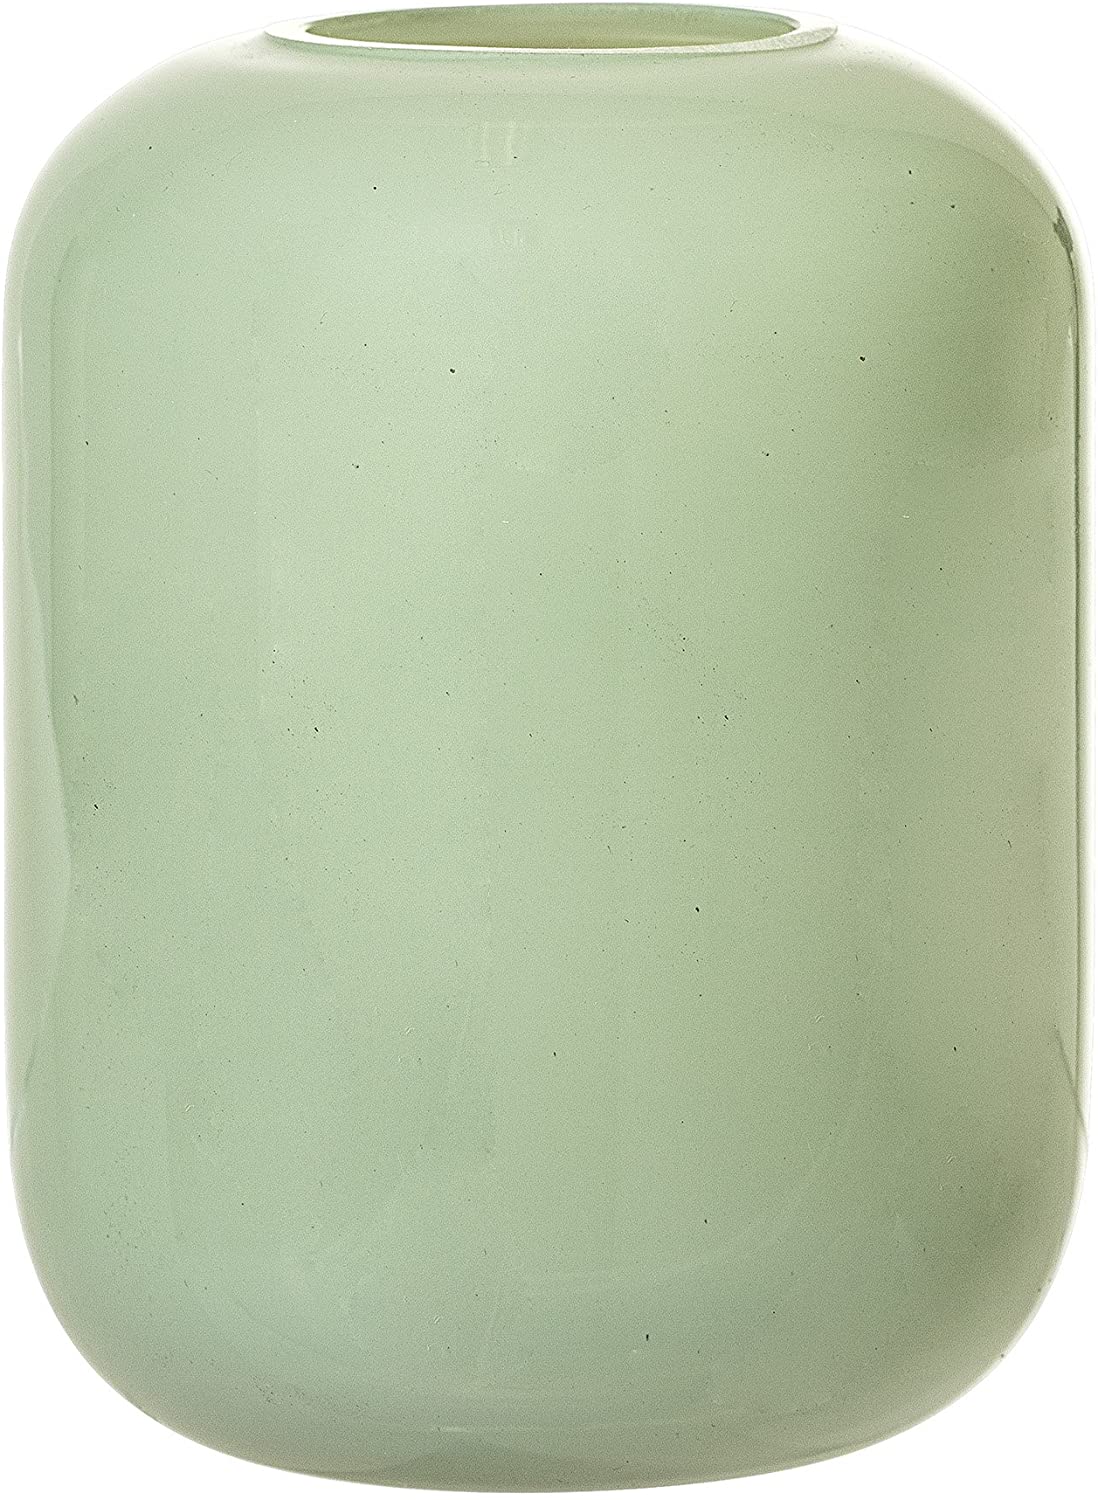 Bloomingville Vase Green